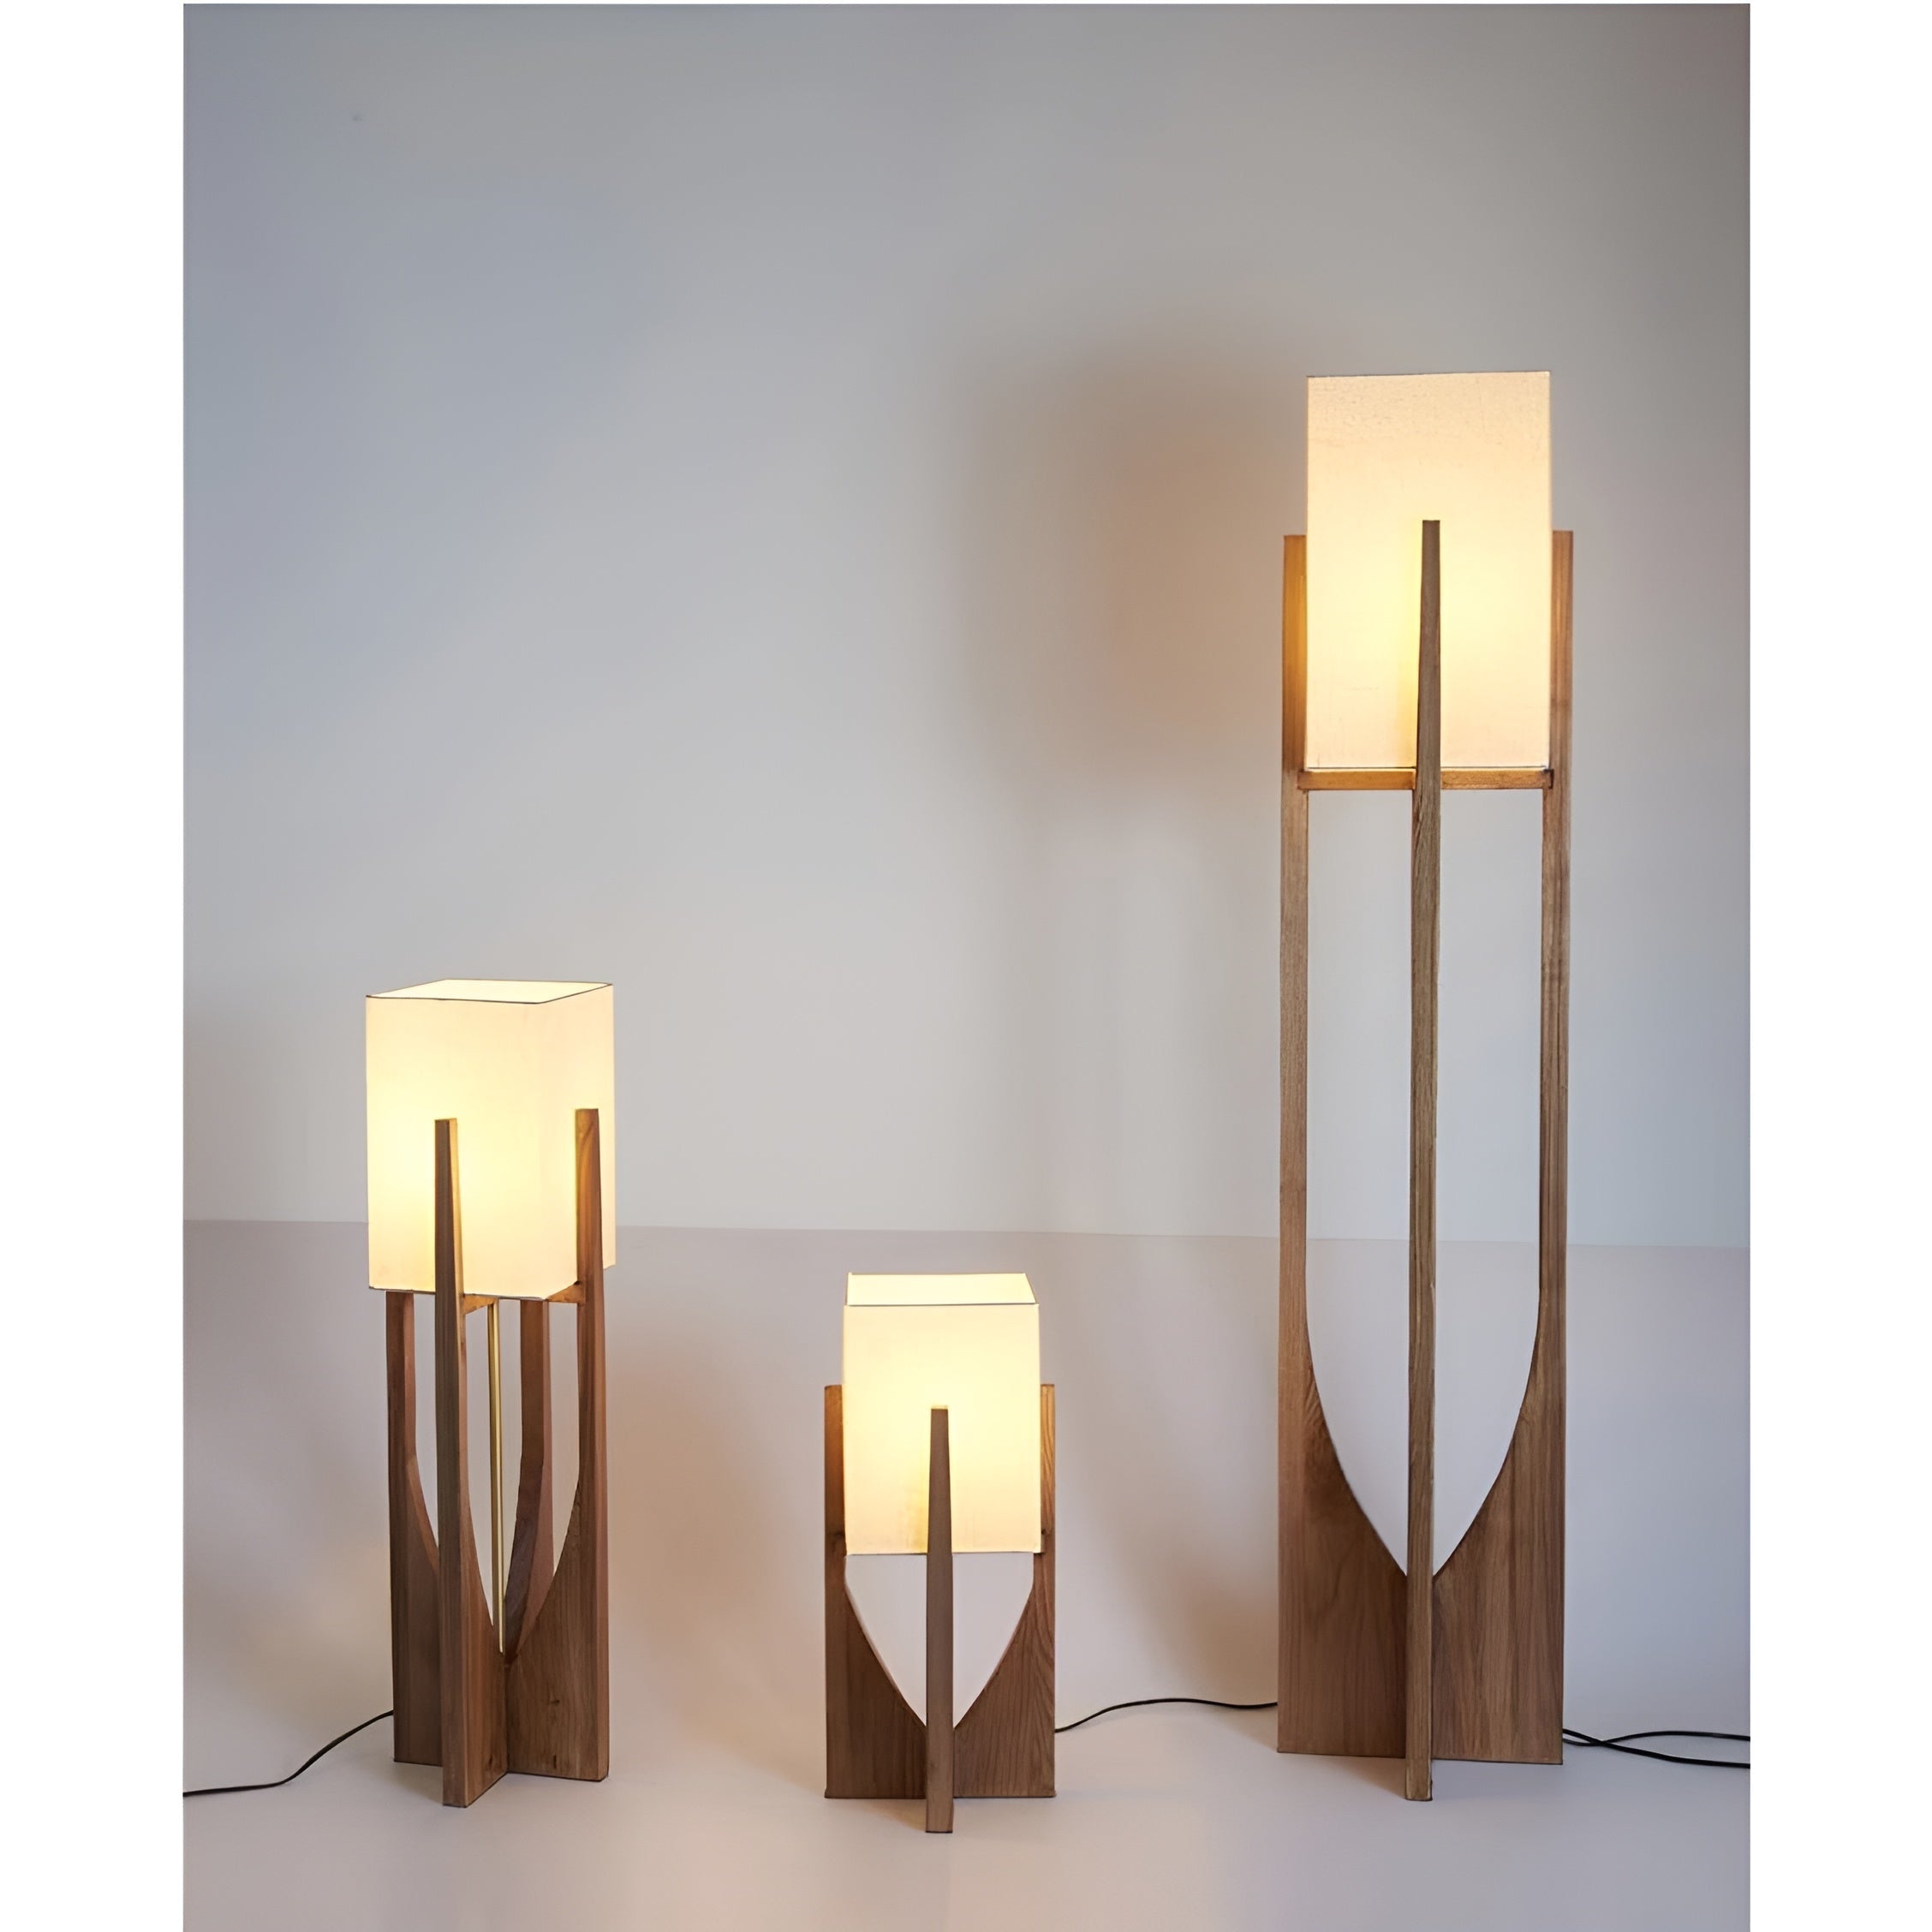 Mid Century Table Lamp | Japanese Light Rustic Wood Floor Casalola - Minimalist Lamps